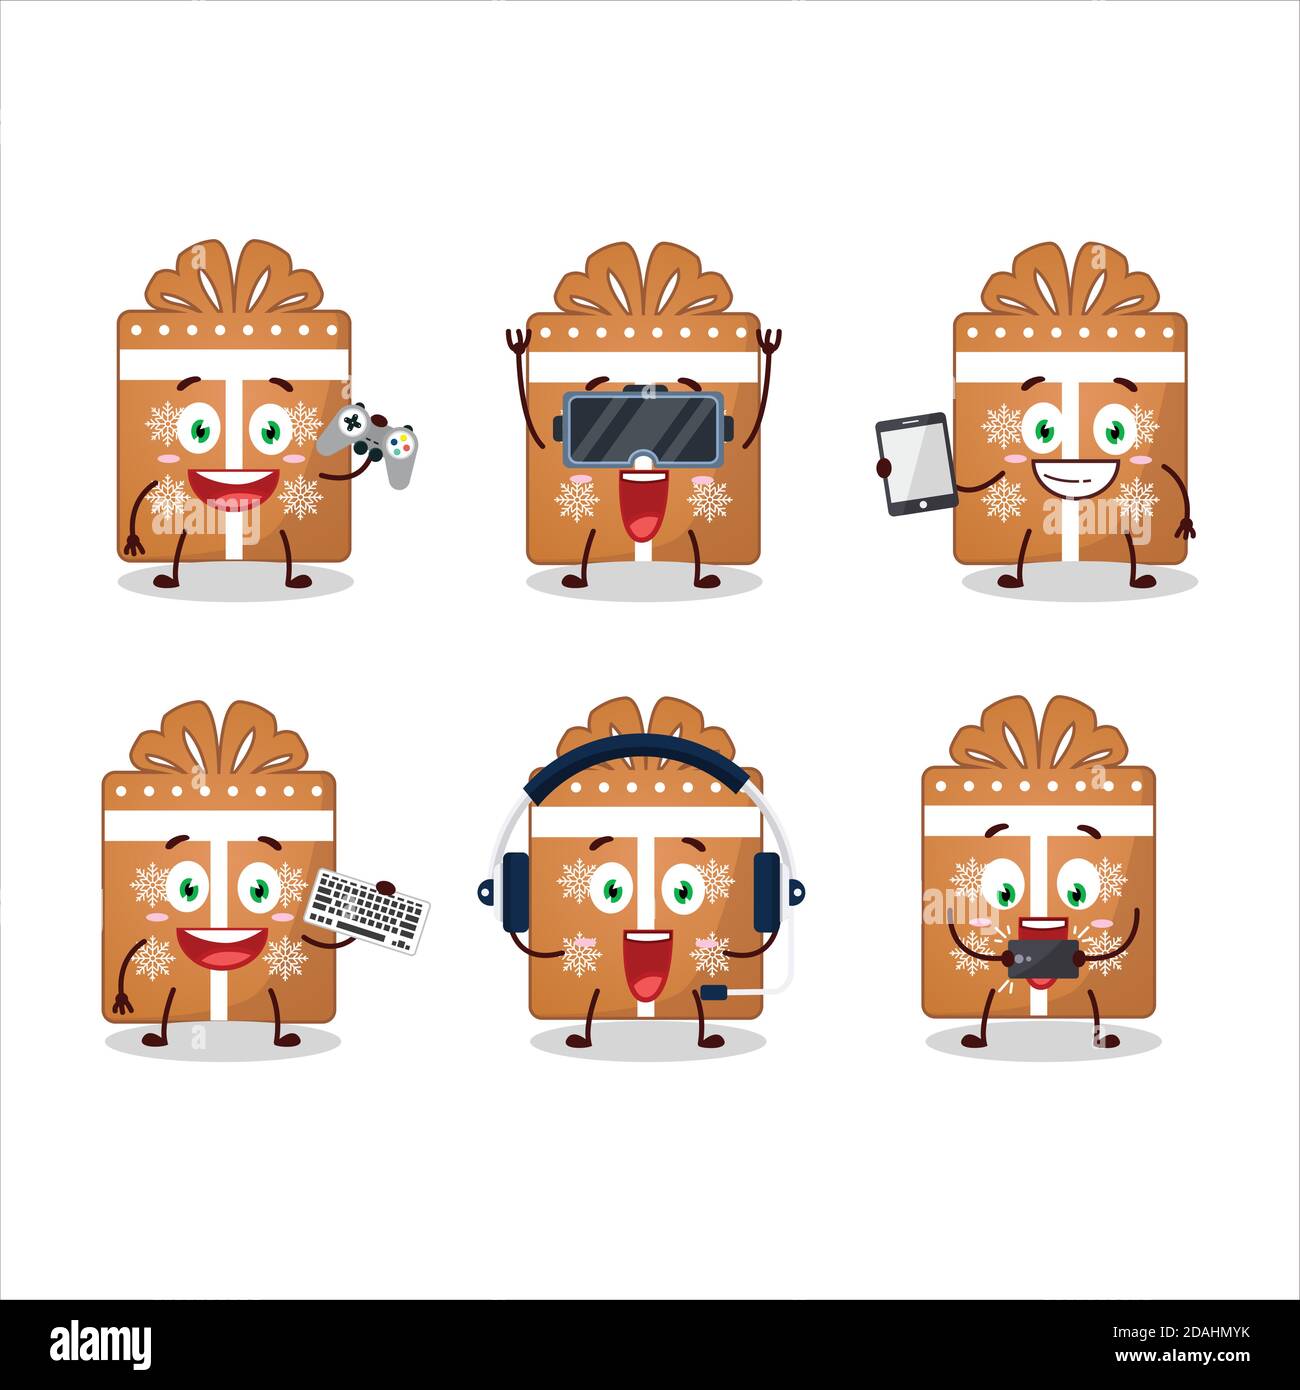 Les cookies de cadeau personnage de dessin animé jouent à des jeux avec divers mignon émoticônes Illustration de Vecteur